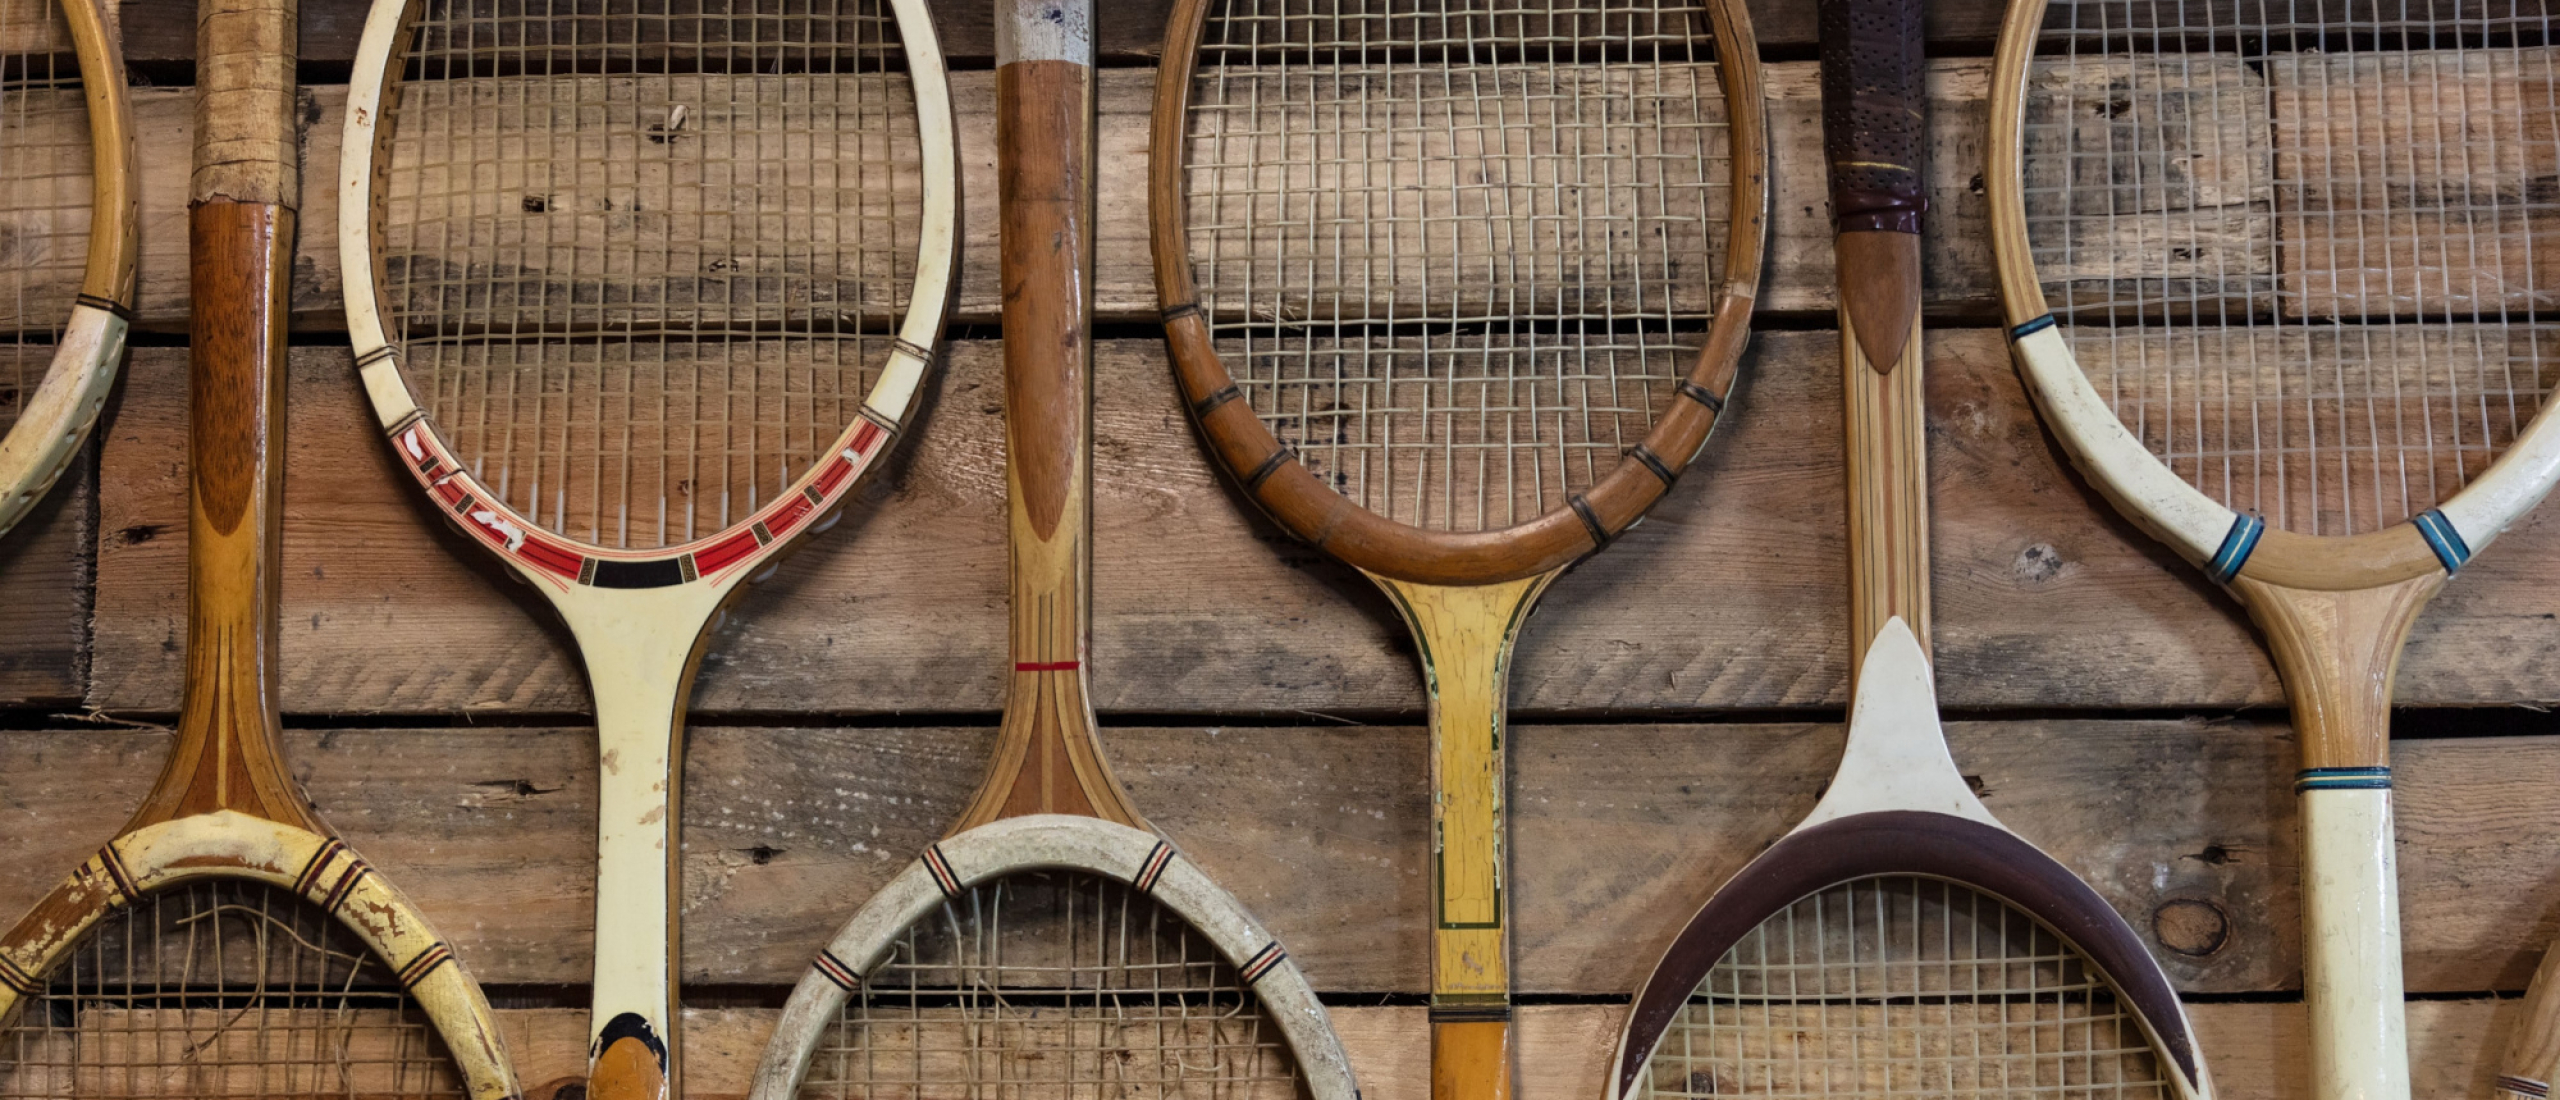 Tennisracket kopen? | alle merken – Tennis-racket.nl